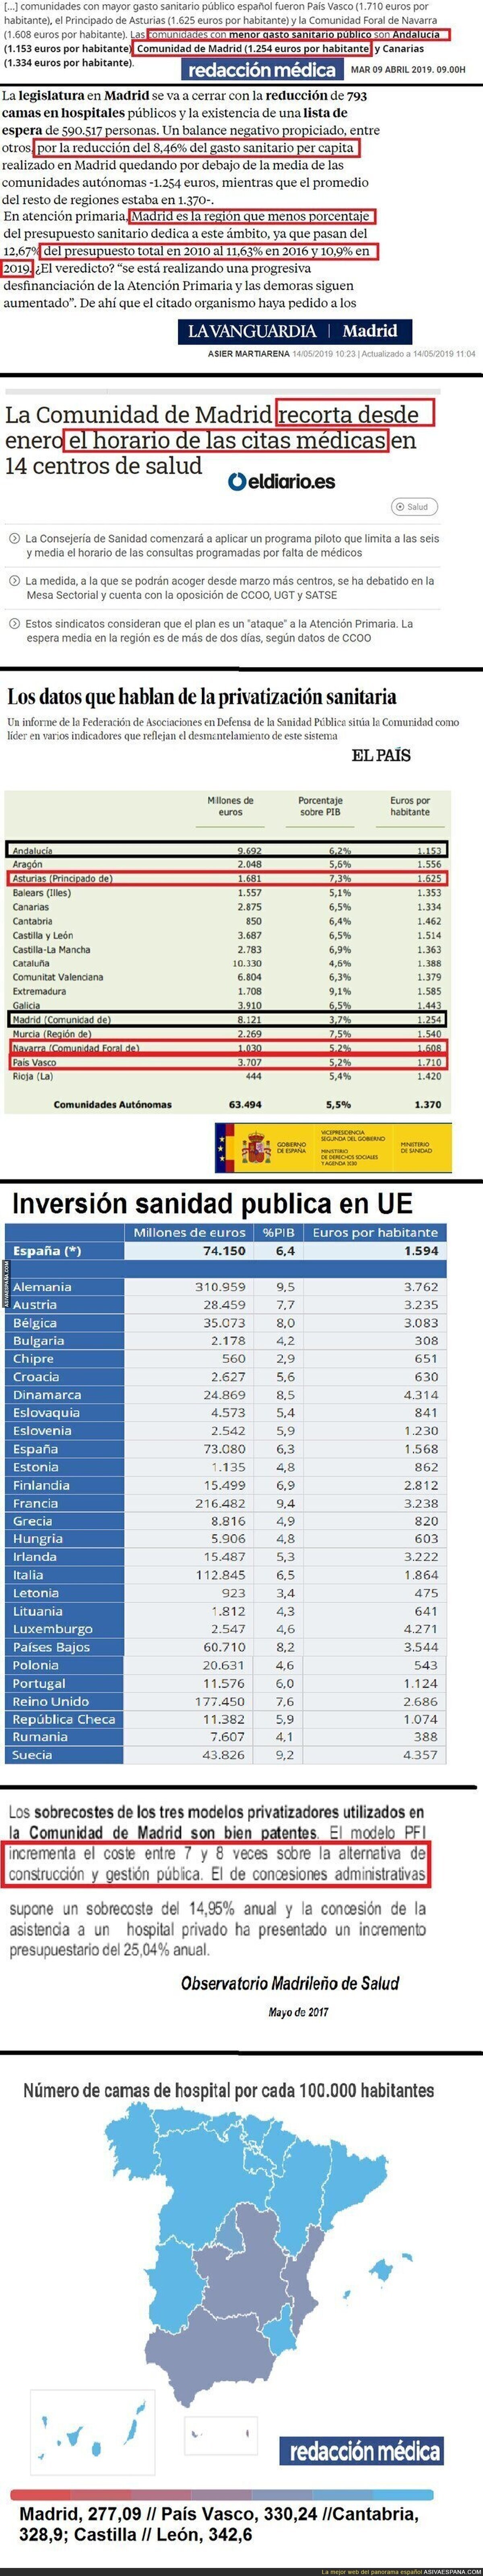 Pruebas de los recortes de la sanidad en Madrid. Comparación con otras comunidades y comparación con UE